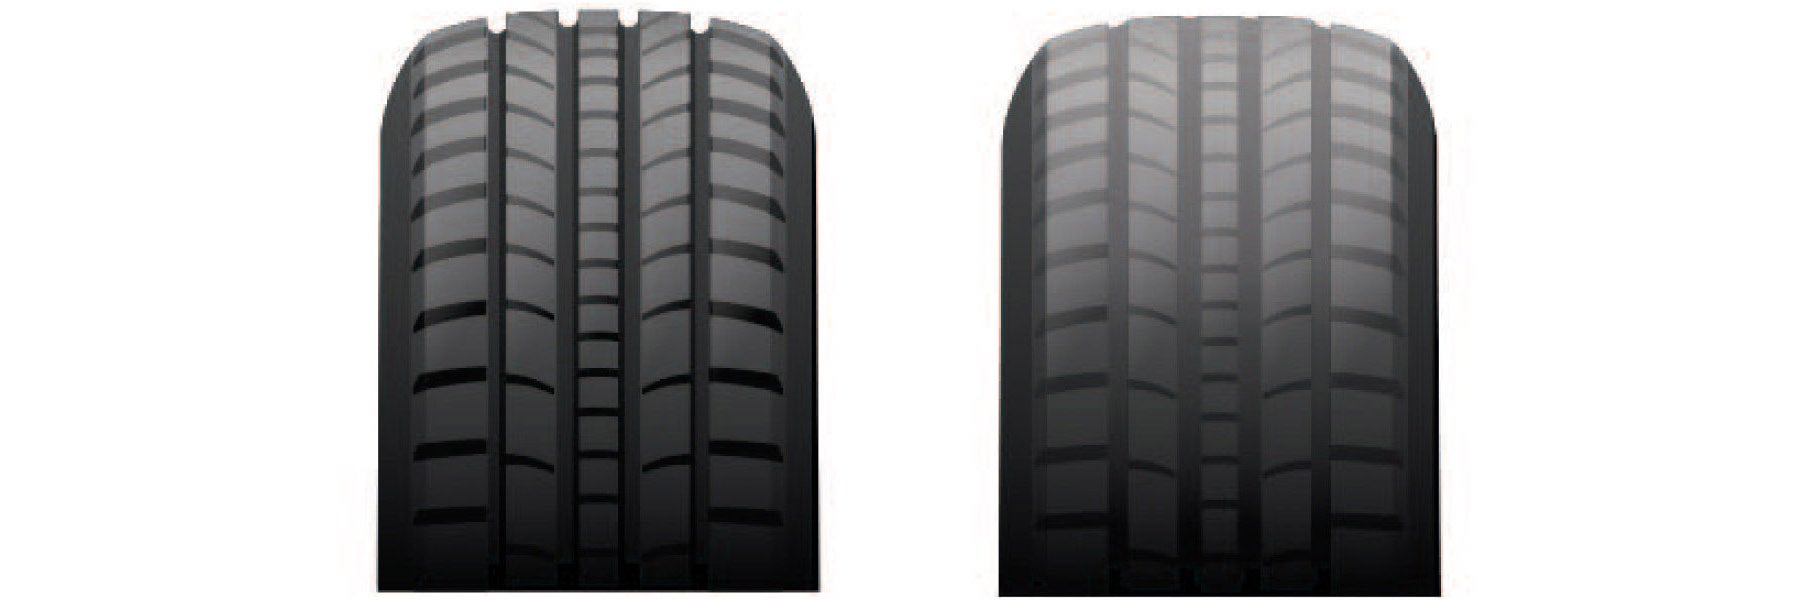 Tire tread depth comparison at Courtesy Kia in Altoona PA